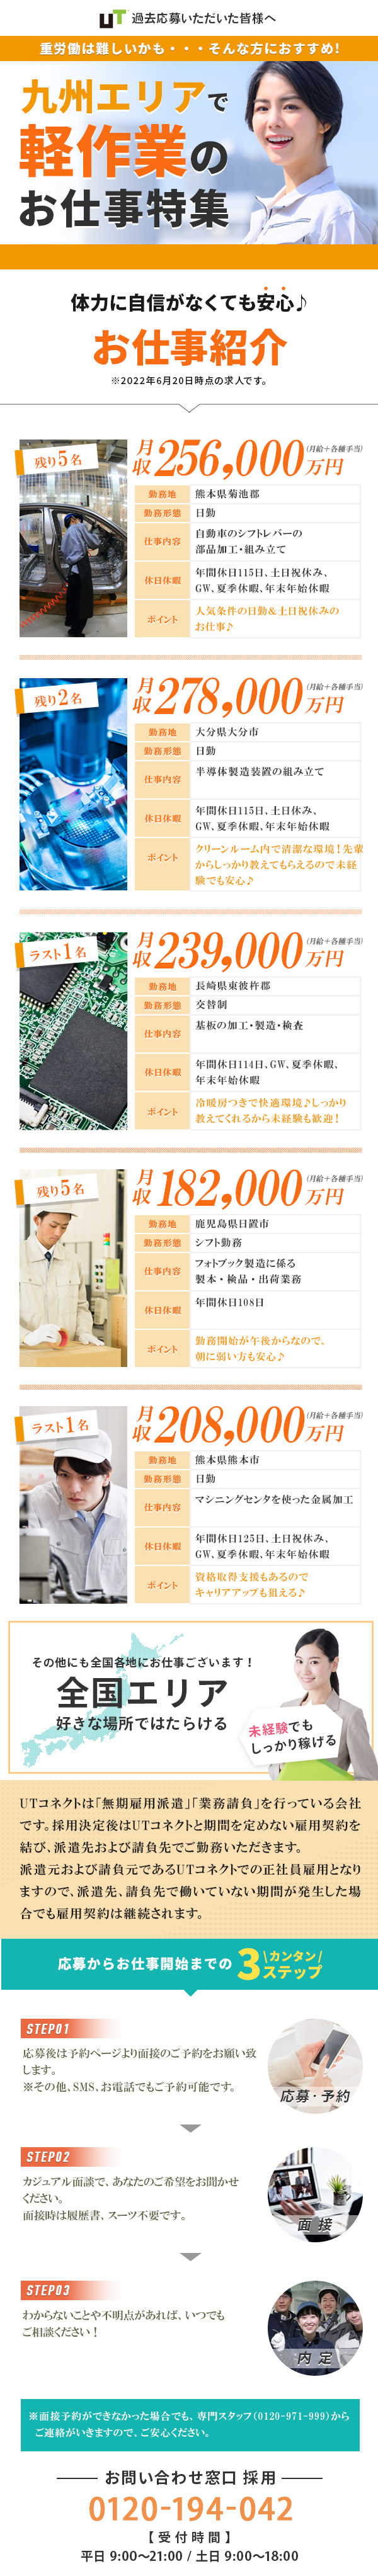 九州エリア人気のお仕事一覧